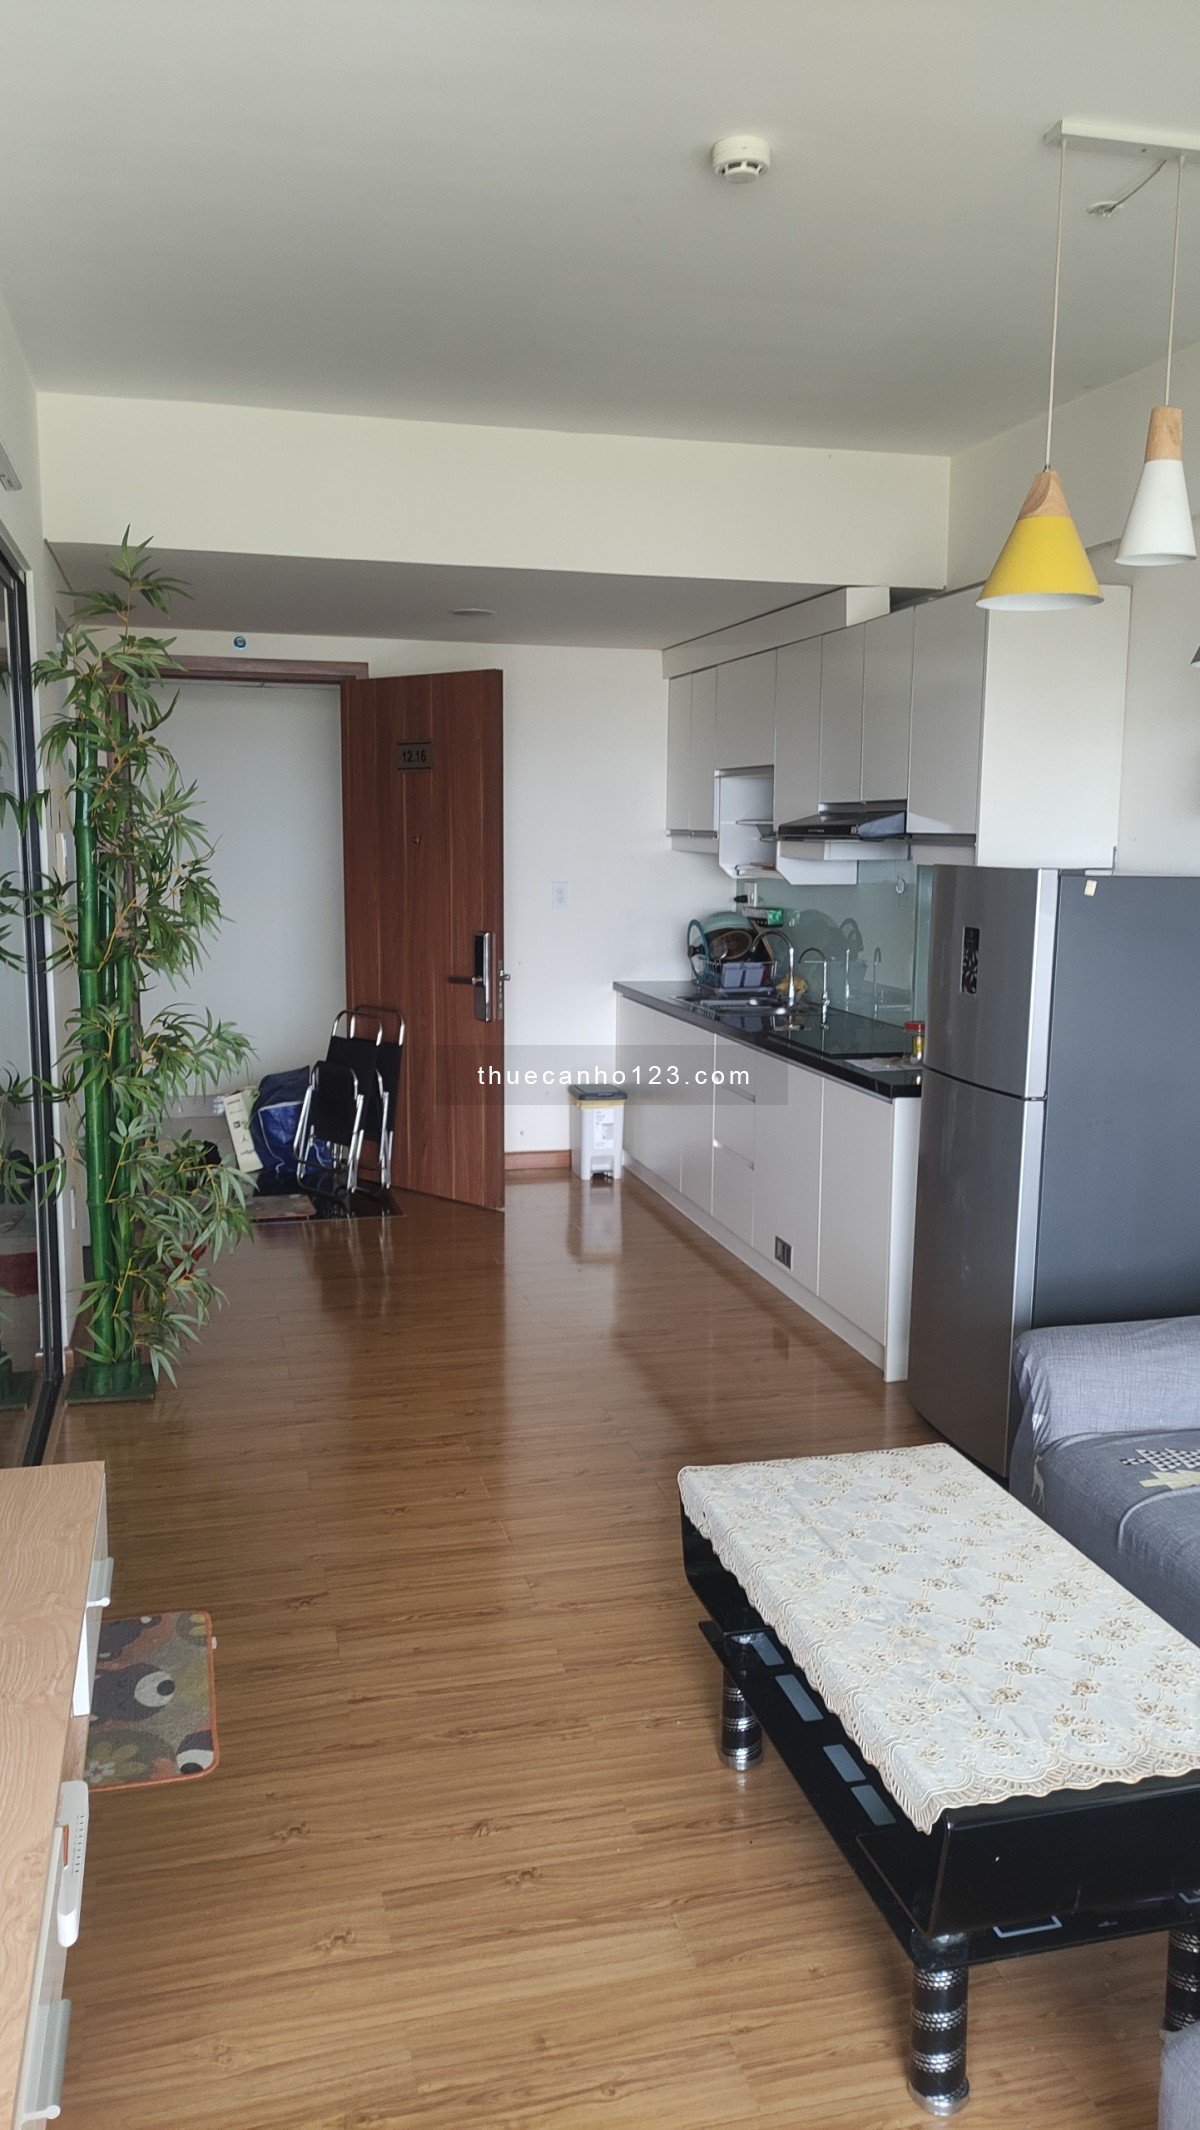 Cho thuê căn hộ Flora Kikyo, 55m2, full nội thất, giá chỉ 7tr/tháng nhận nhà ở ngay